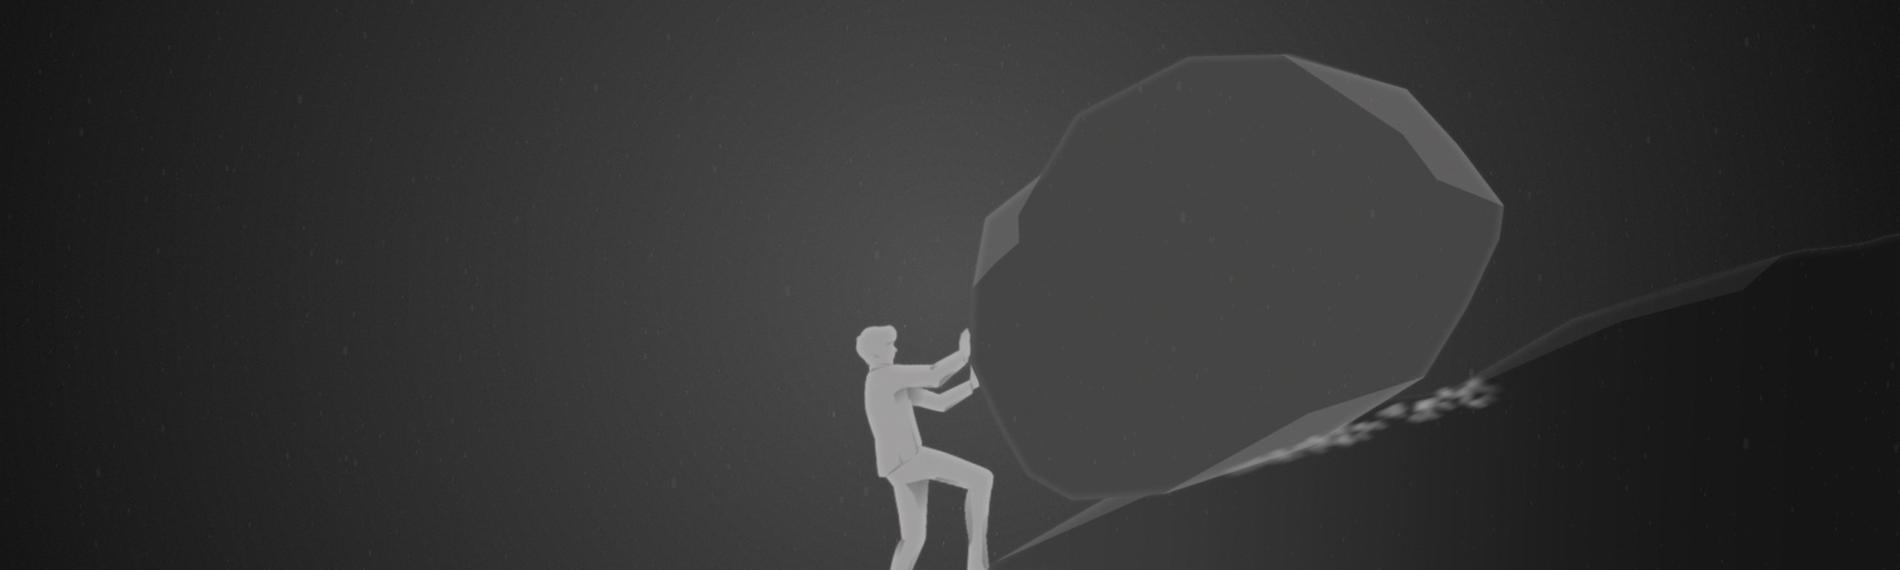 Die Zeichnung zeigt einen Mann, der mit dem Rücken zu einem Abgrund steht - und versucht, einen Stein aufzuhalten, der ihn Richtung Klippe drängt.